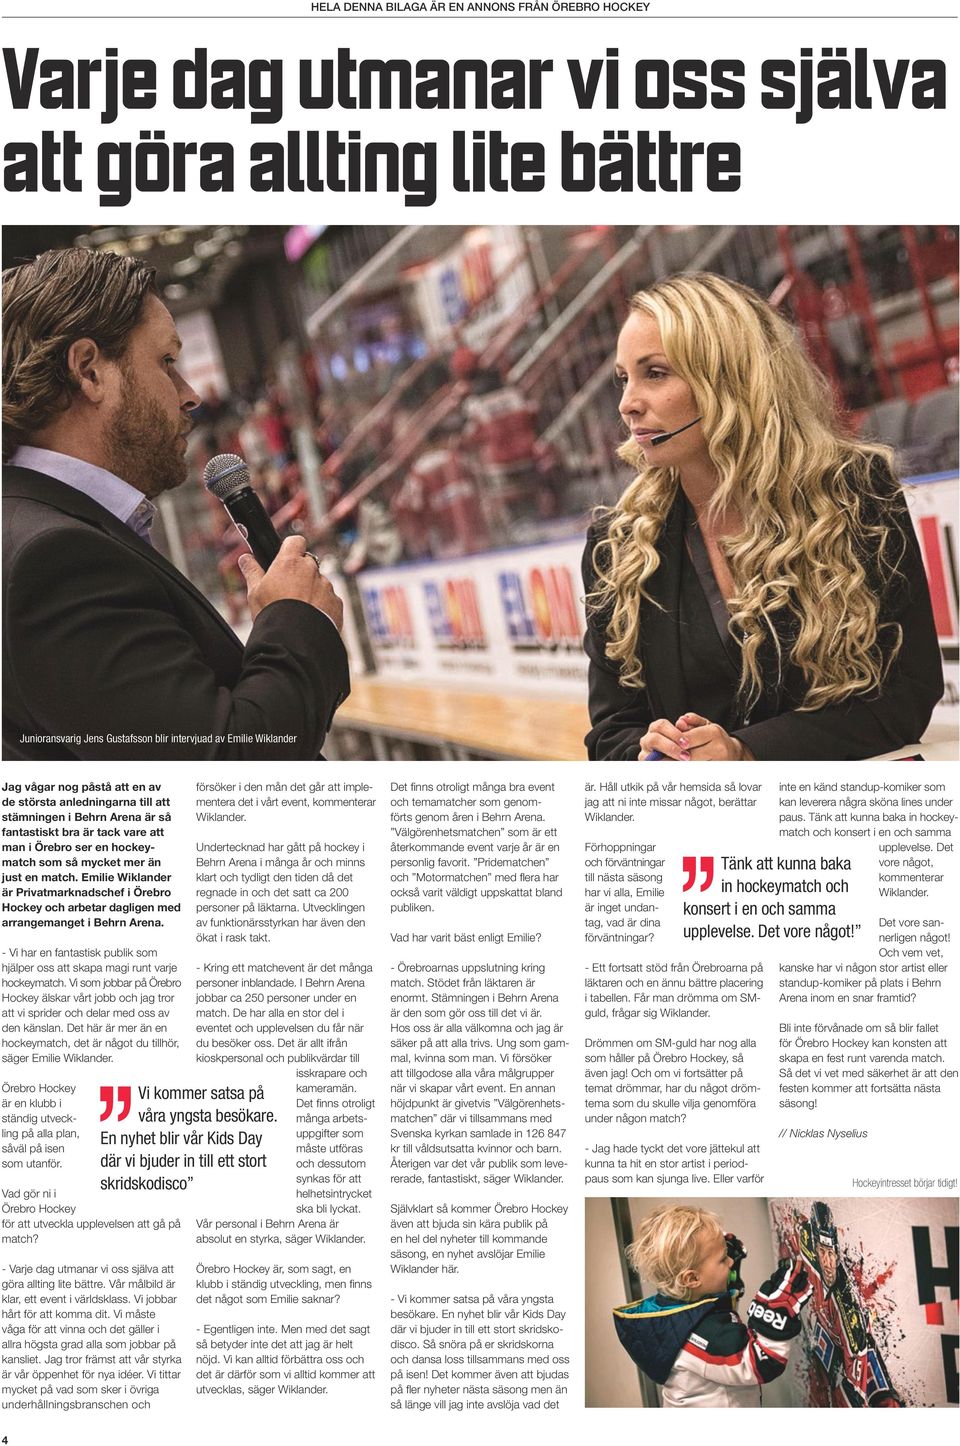 Emilie Wiklander är Privatmarknadschef i Örebro Hockey och arbetar dagligen med arrangemanget i Behrn Arena. - Vi har en fantastisk publik som hjälper oss att skapa magi runt varje hockeymatch.